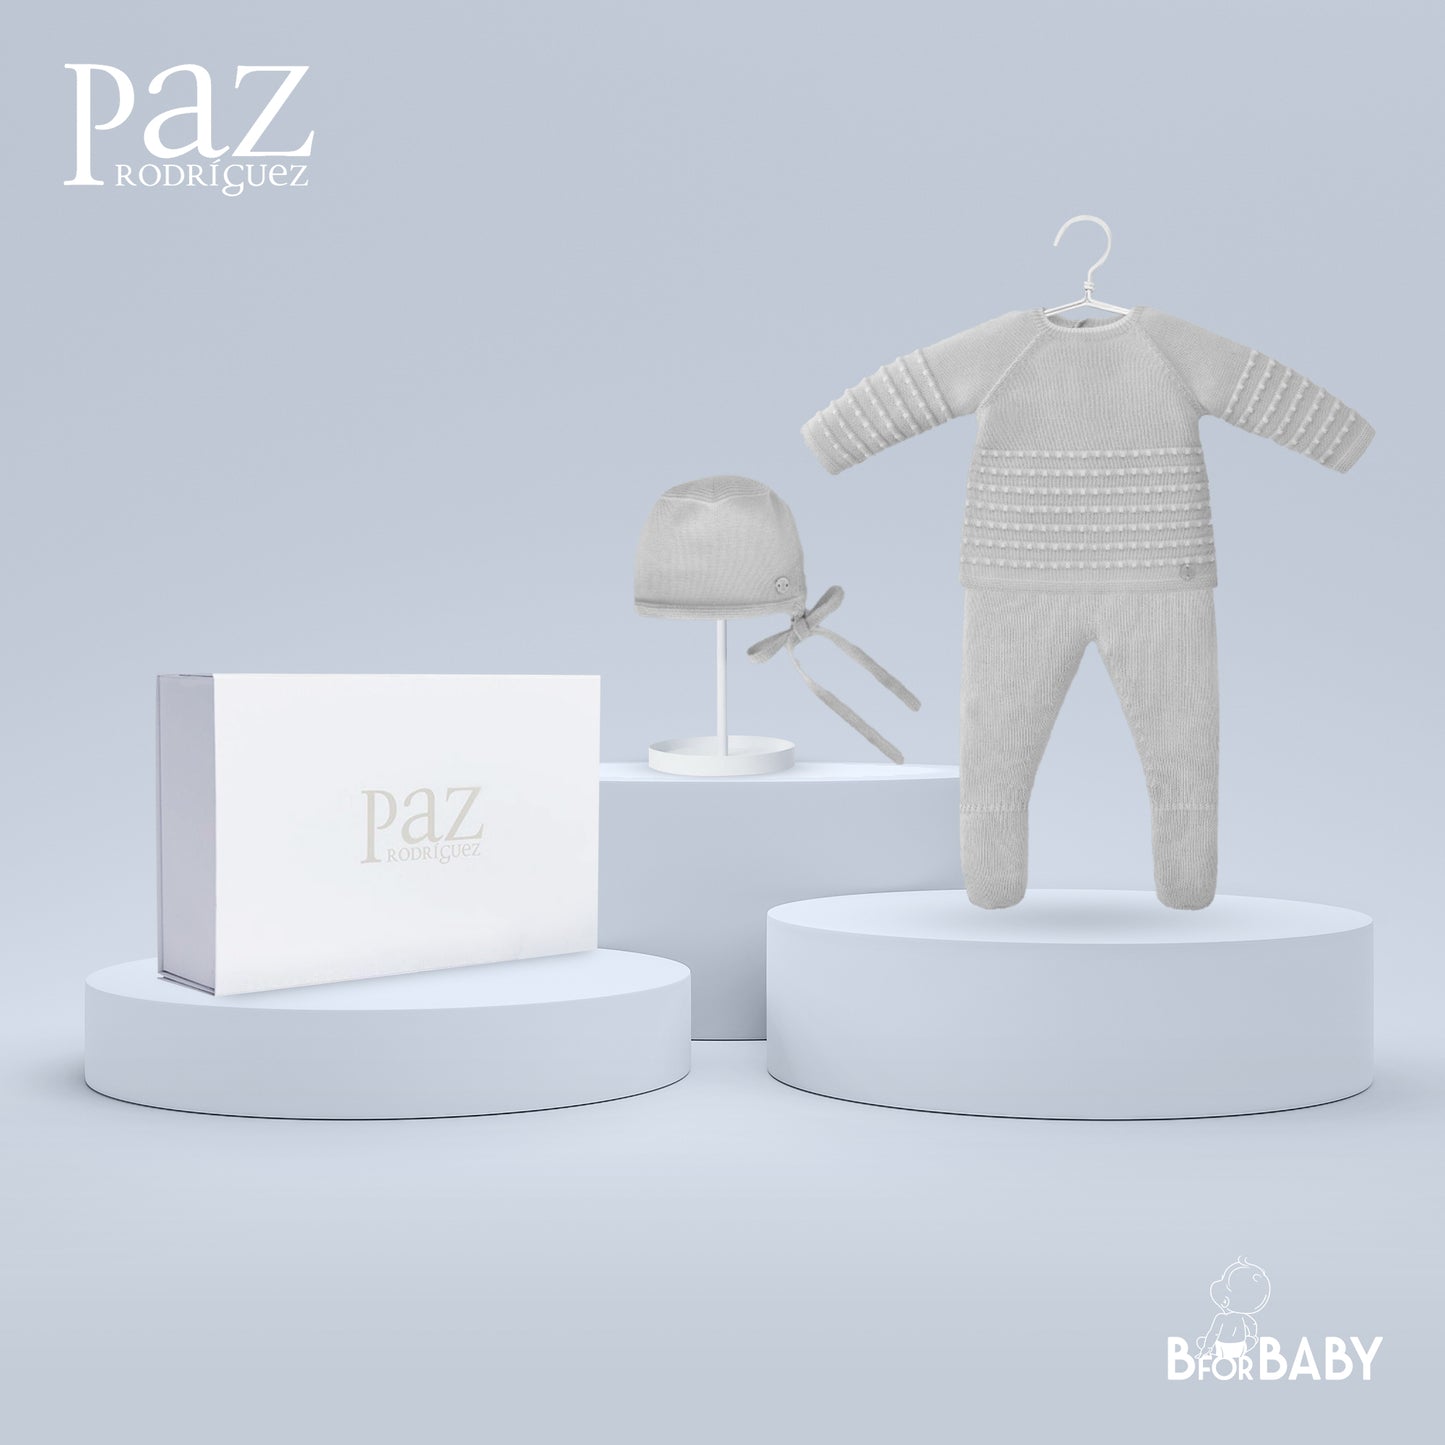 Paz Rodriguez 3-Piece (Sweater, Pants, Bonnet) Gift Set - Grey